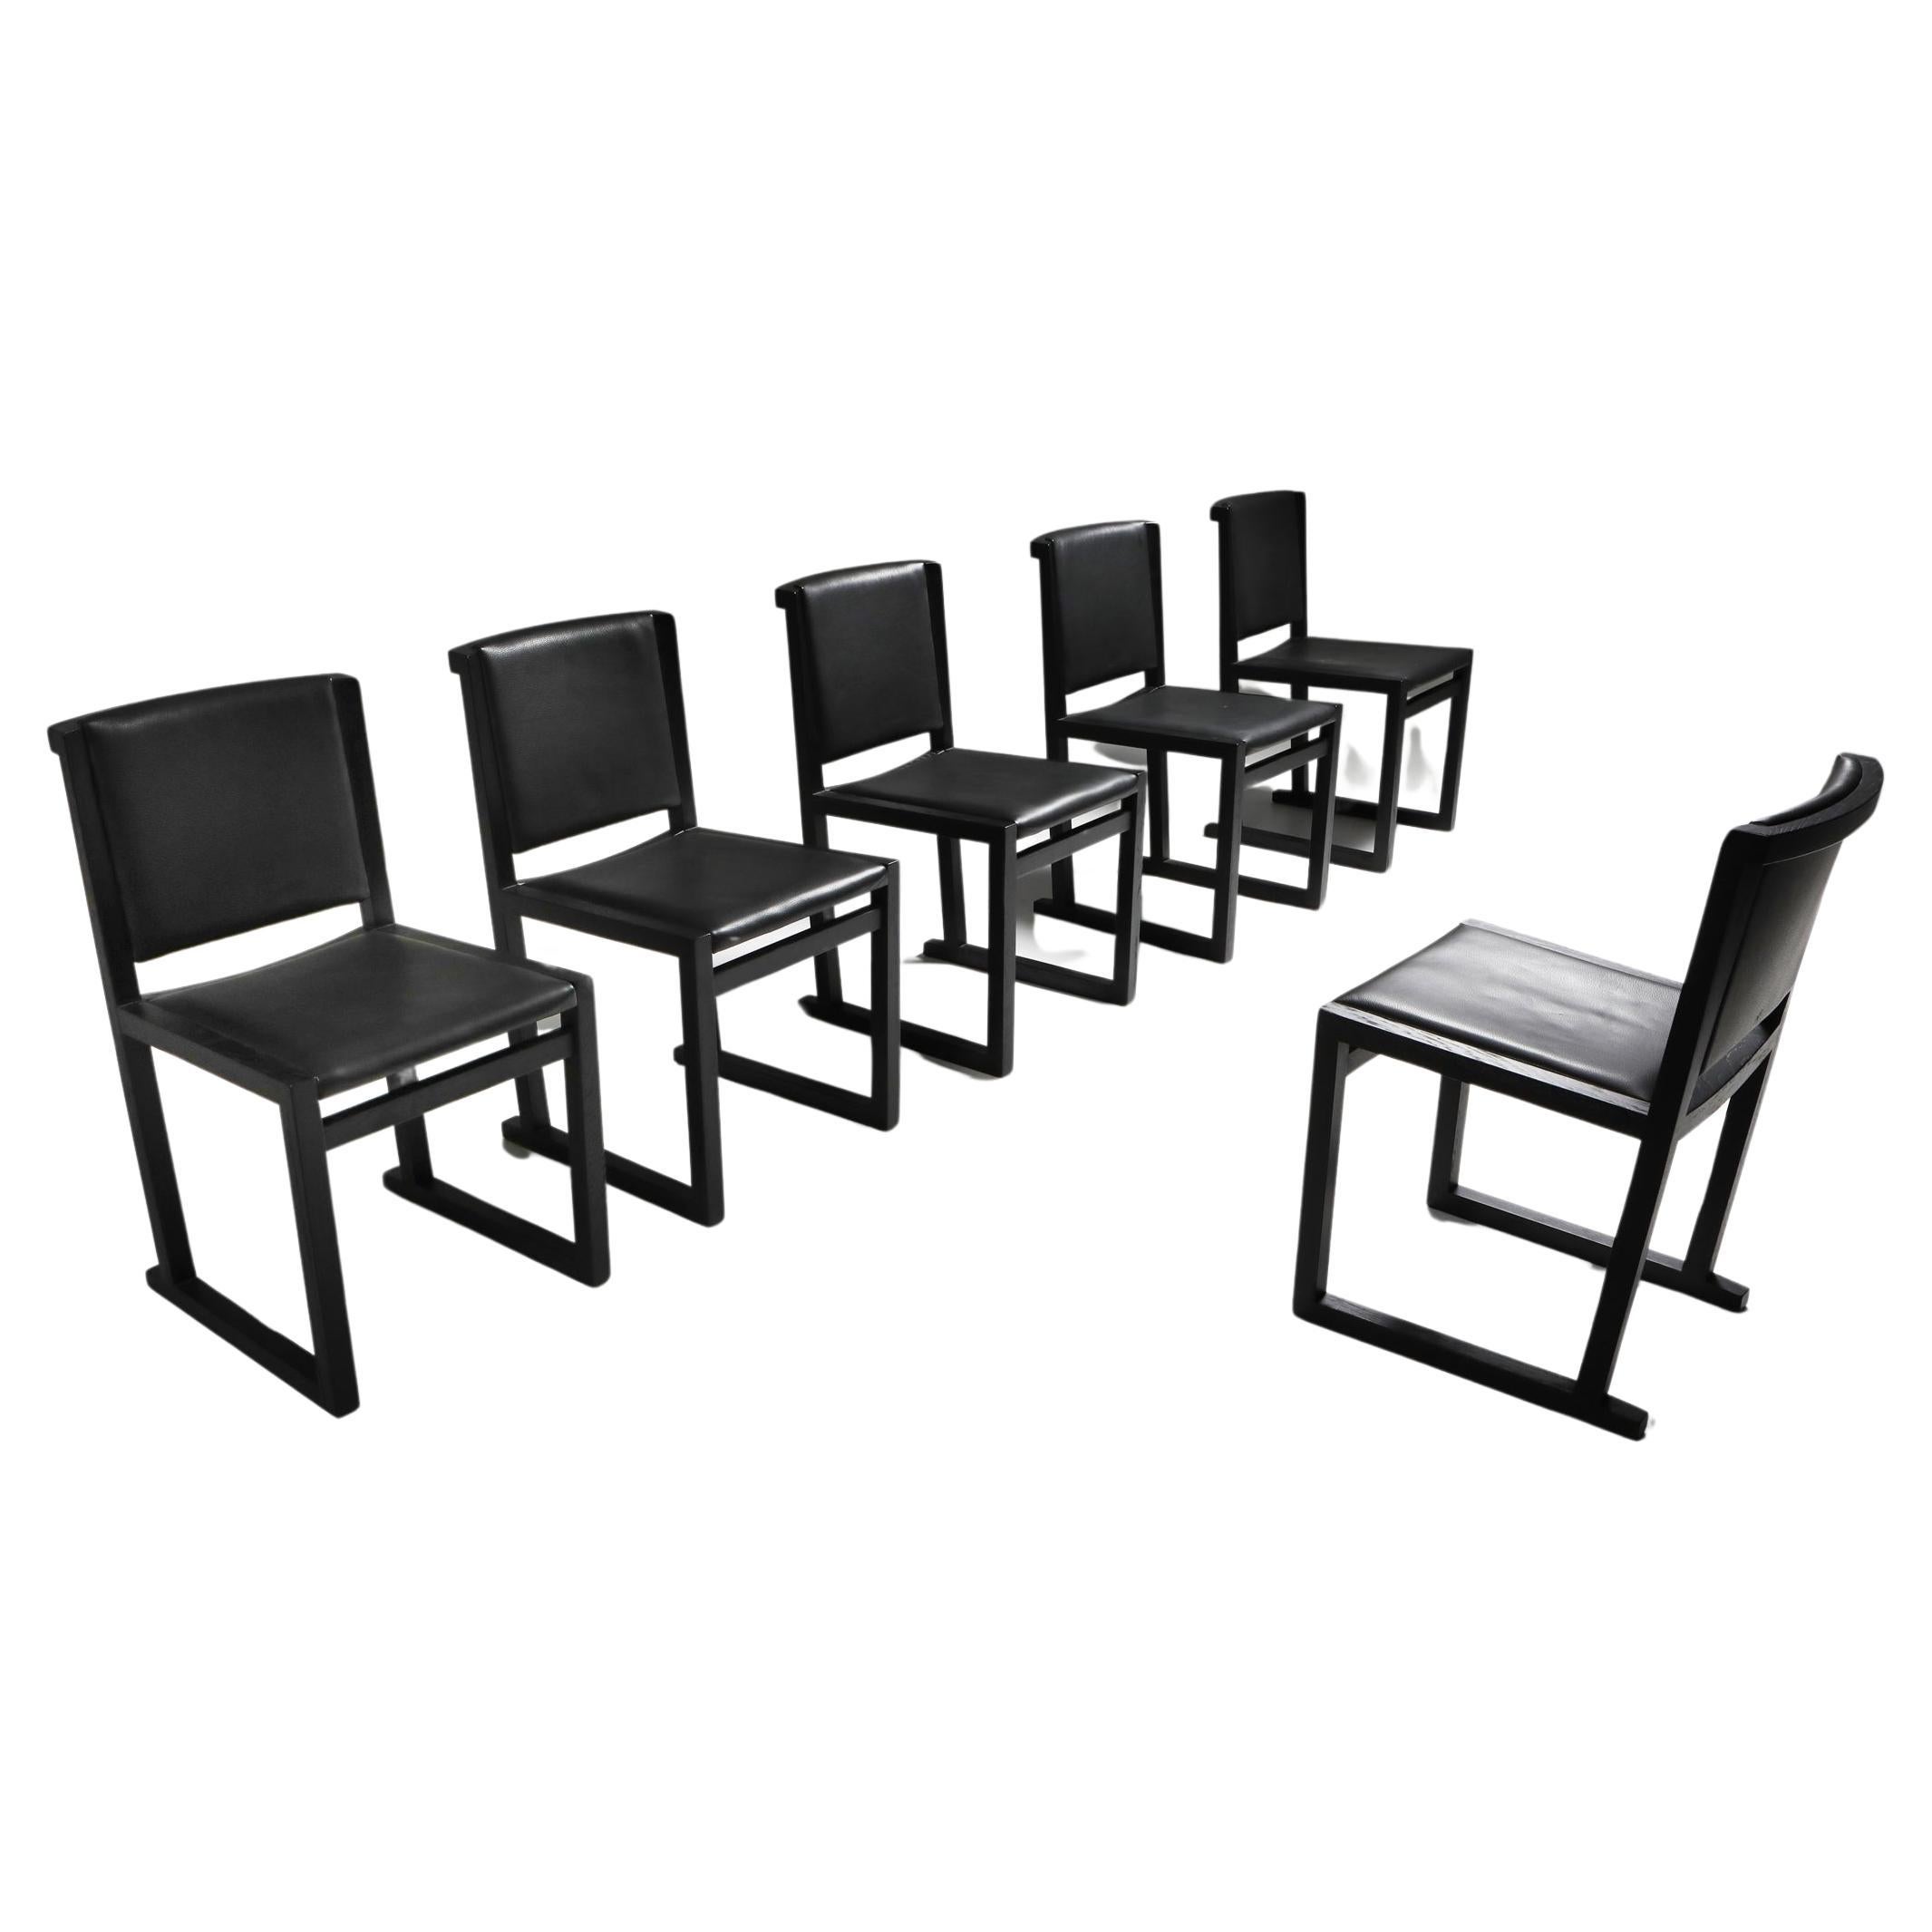 Chaises de salle à manger en chêne ébonisé Maxalto, fabriquées par Antonio Citterio en 2004, un exemple frappant de design de mobilier contemporain. L'expertise d'Antonio Citterio en matière de design transparaît dans les lignes gracieuses des